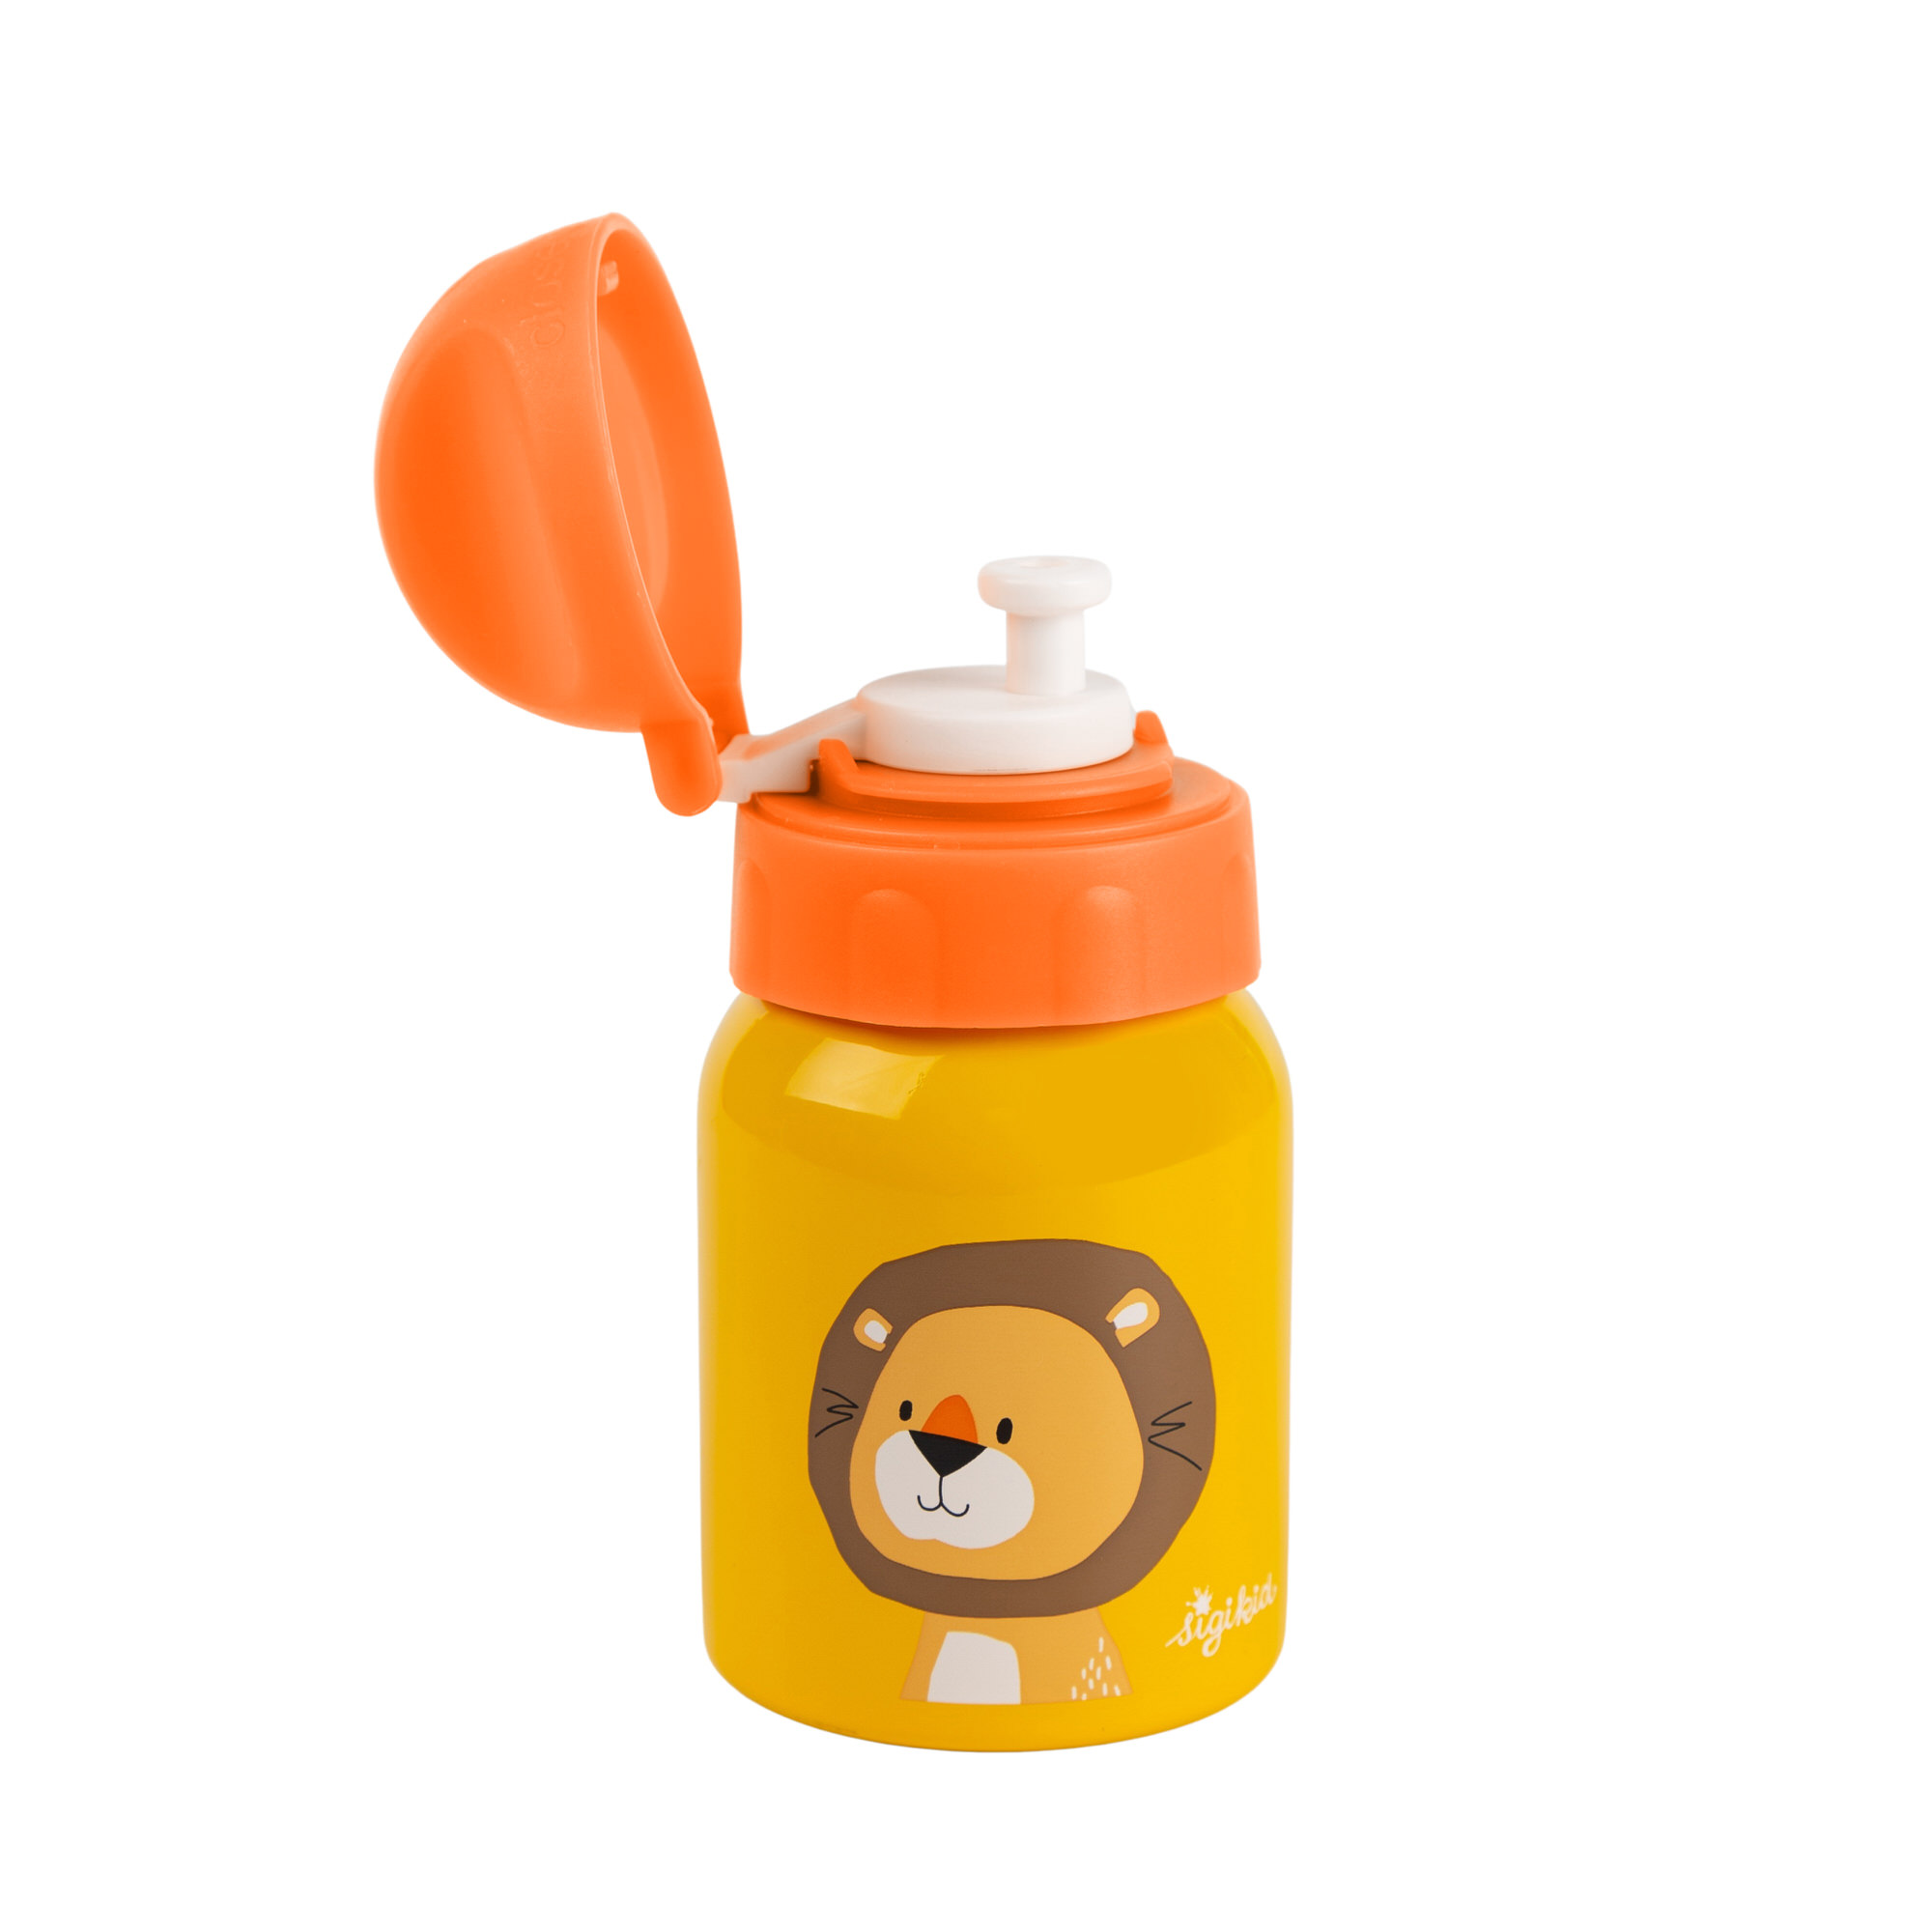 Little drink bottle lion for children, stainless steel